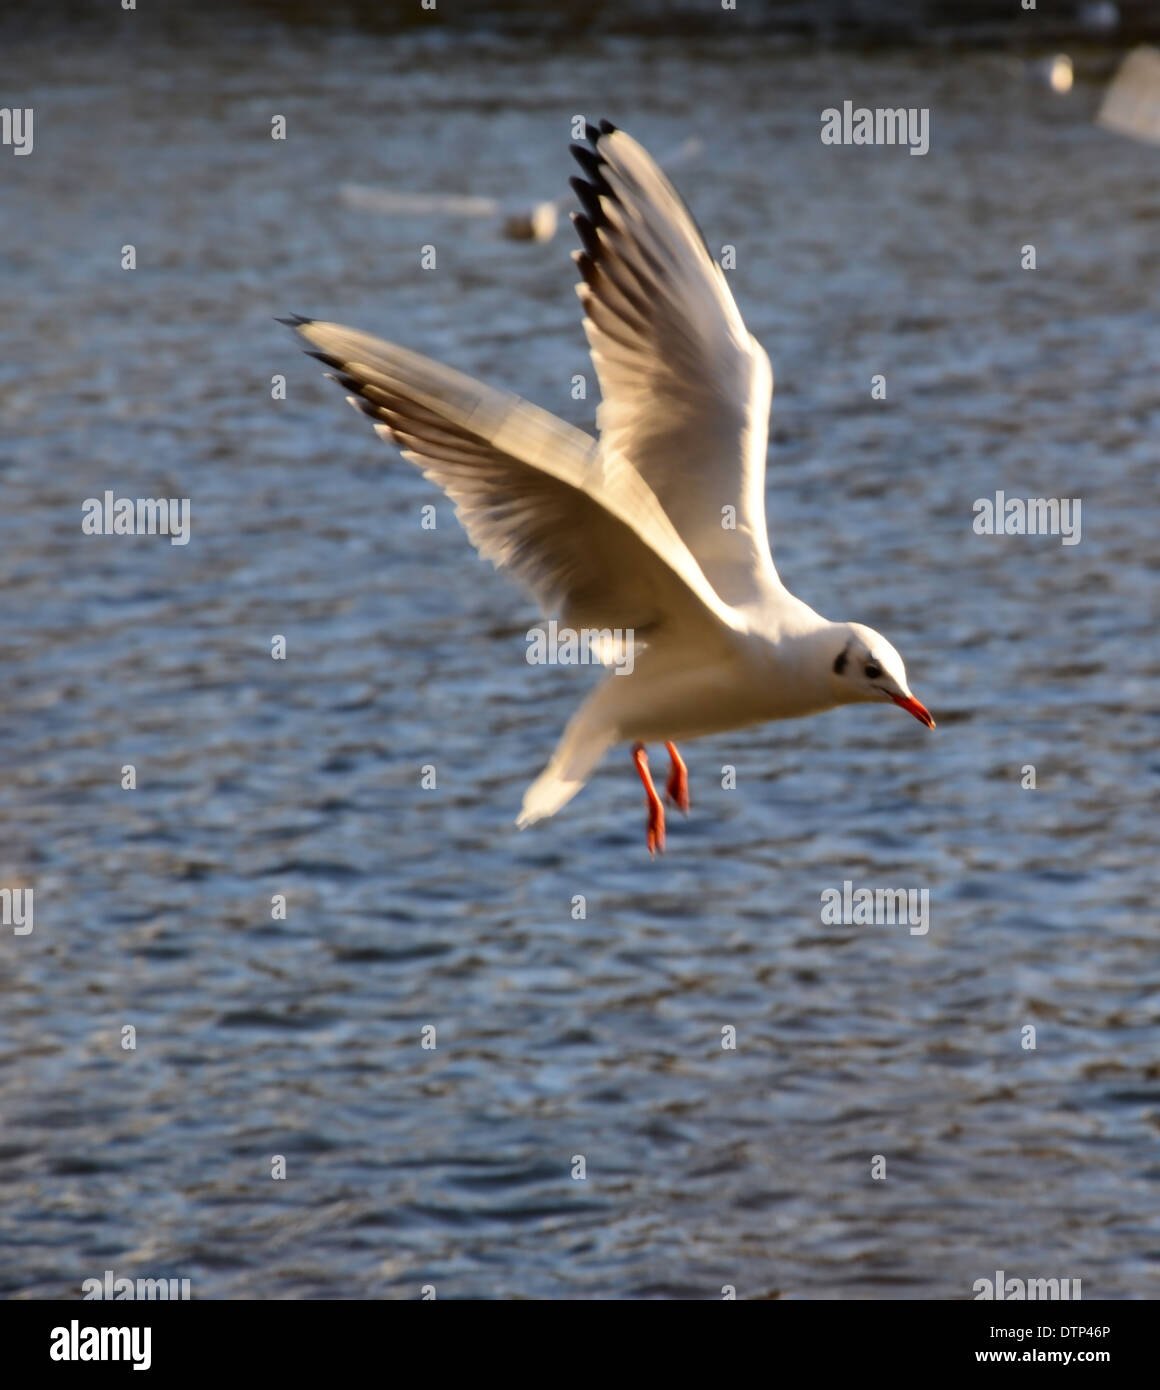 Vuelo de aves, St Ives, BINGLEY Foto de stock